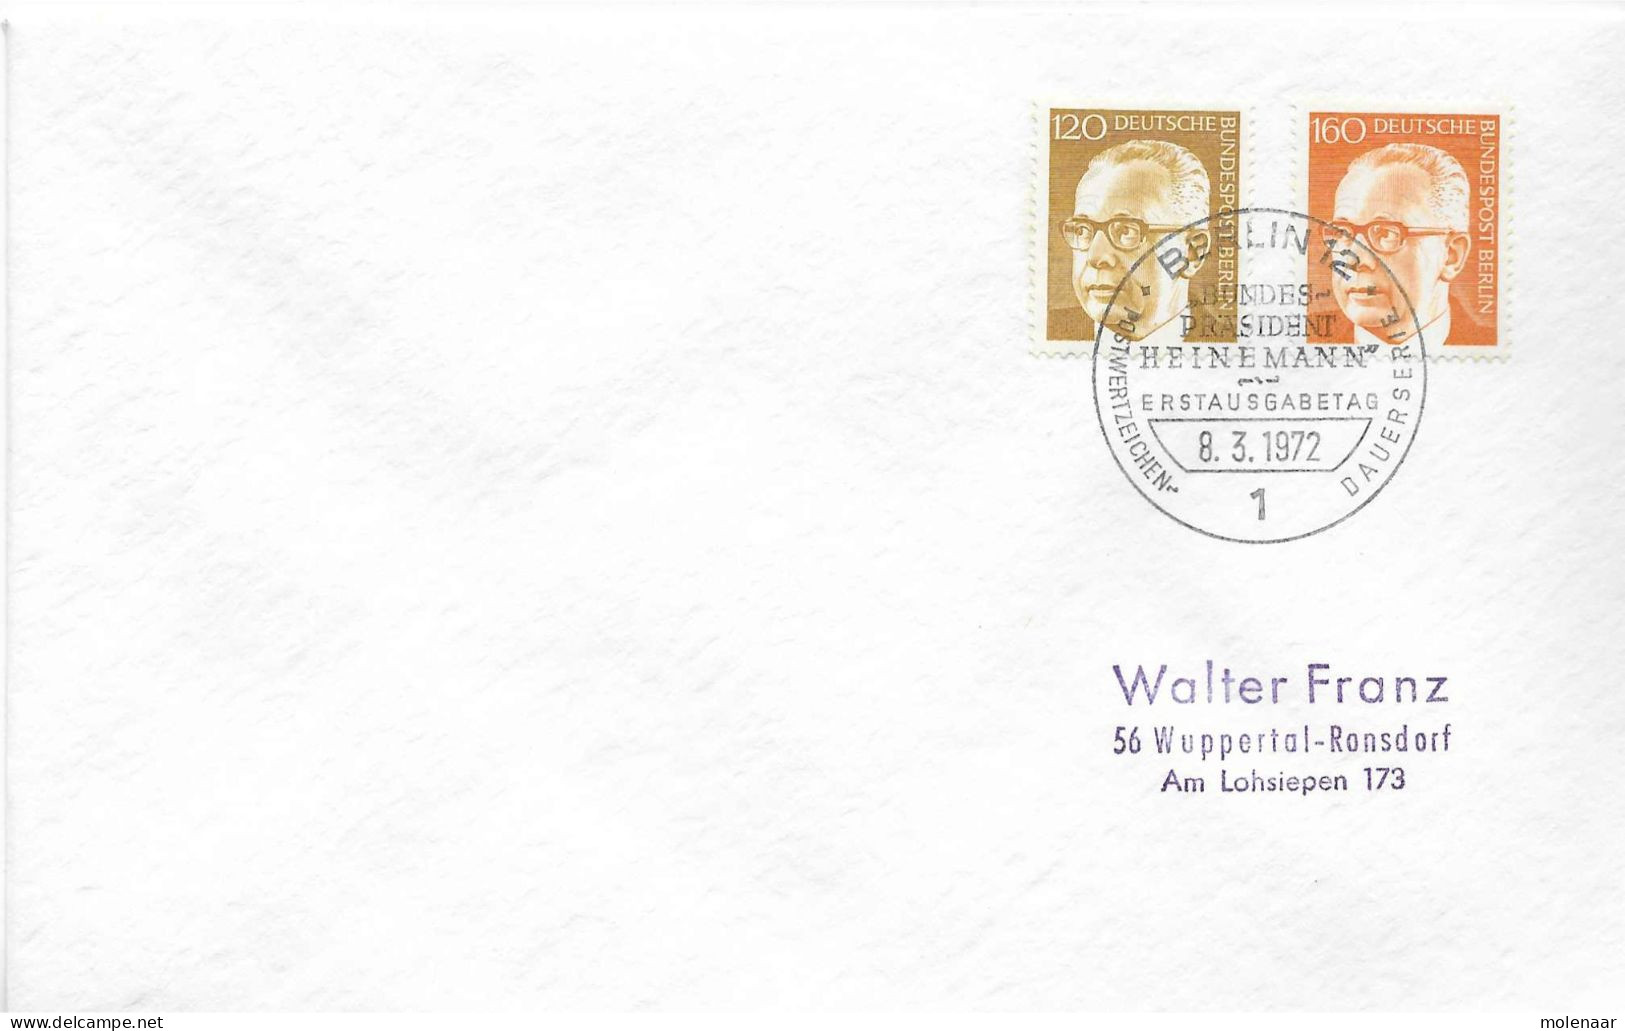 Postzegels > Europa > Duitsland > Berlijn > 1970-1979 > Brief Met No. 395 En 396 (17295) - Lettres & Documents